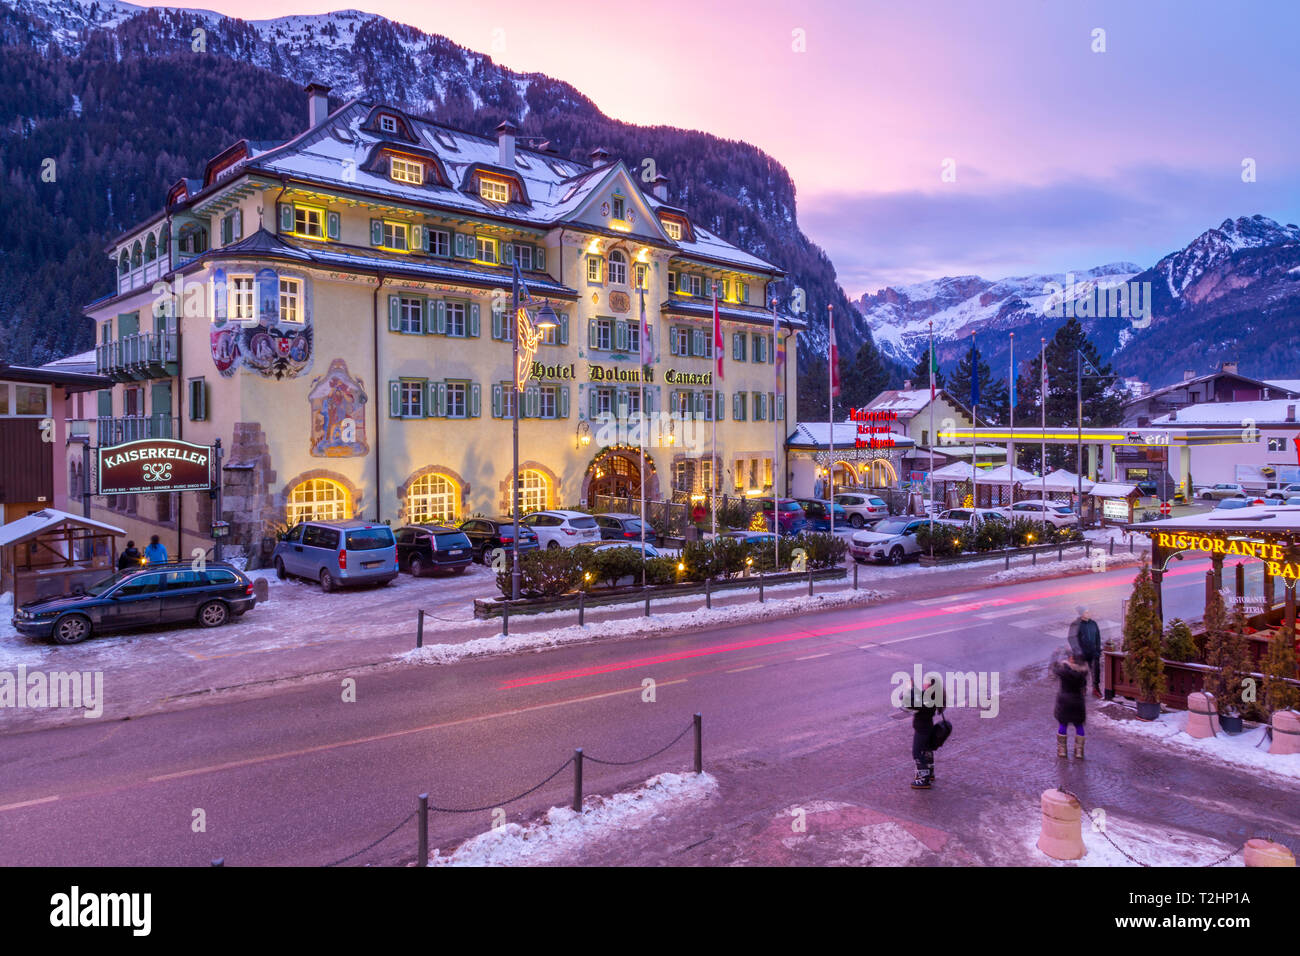 Vista del Hotel Dolomiti Canazei al anochecer en invierno, Canazei, Val di Fassa, Trentino, Italia, Europa Foto de stock